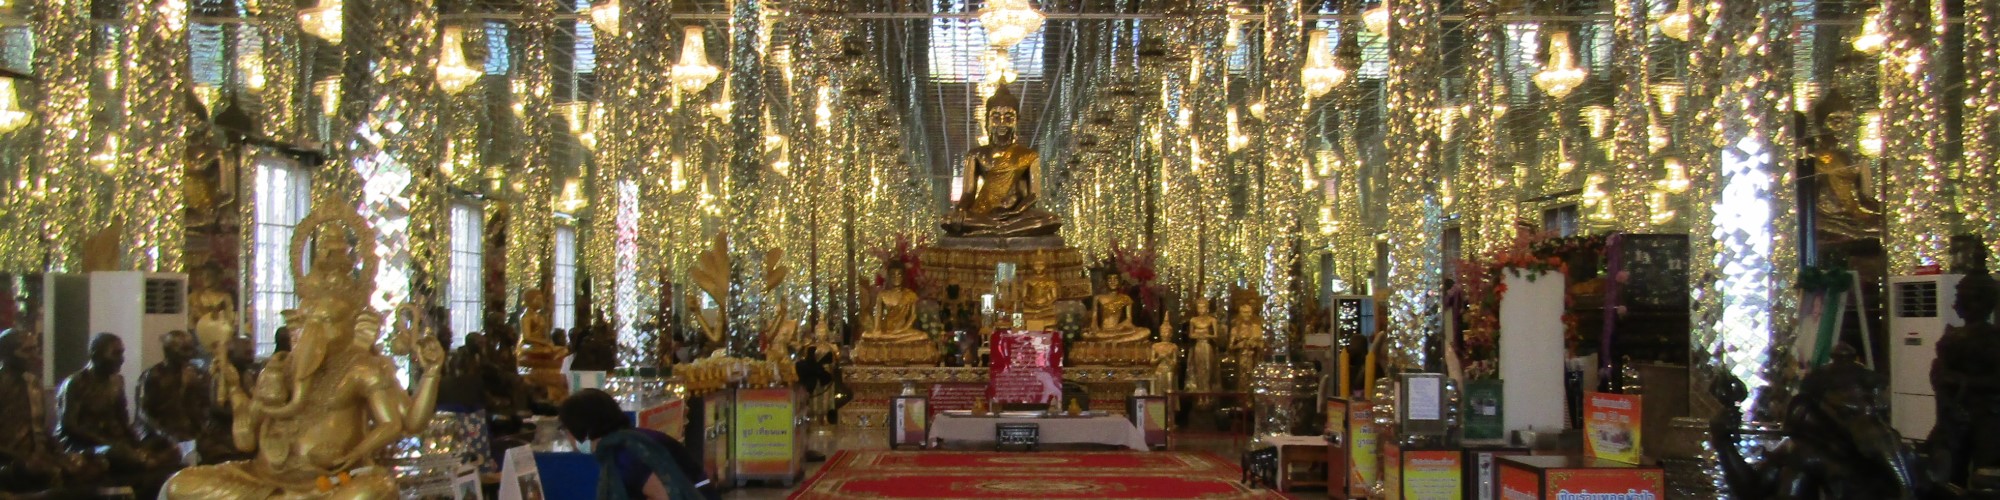 Buddha Image at Wat Pa Mok Worawihan, Pa Mok District, Angthong Province